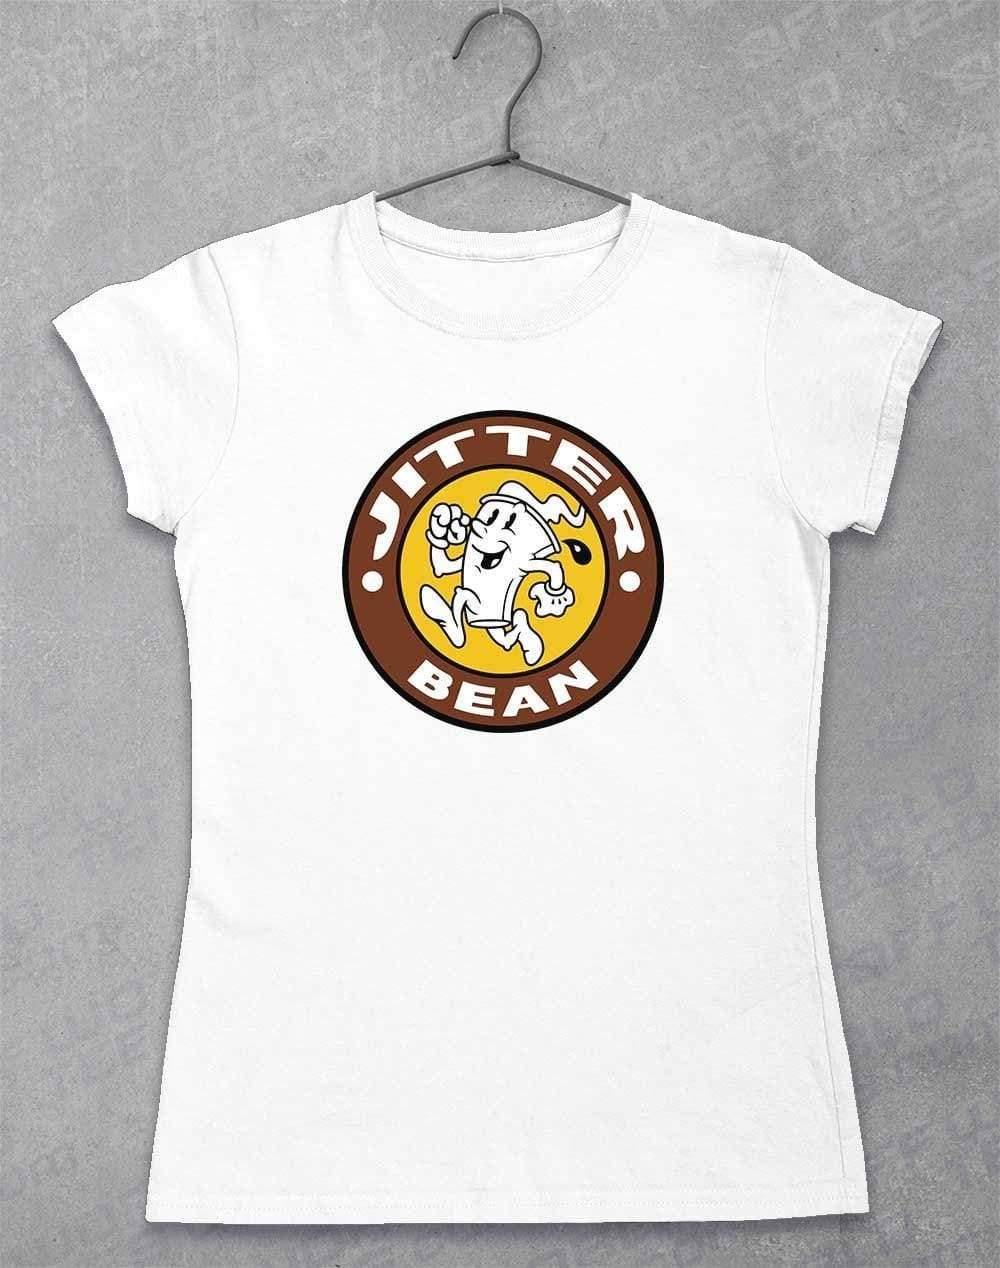 Jitter Bean Women's T-Shirt 8-10 / White  - Off World Tees